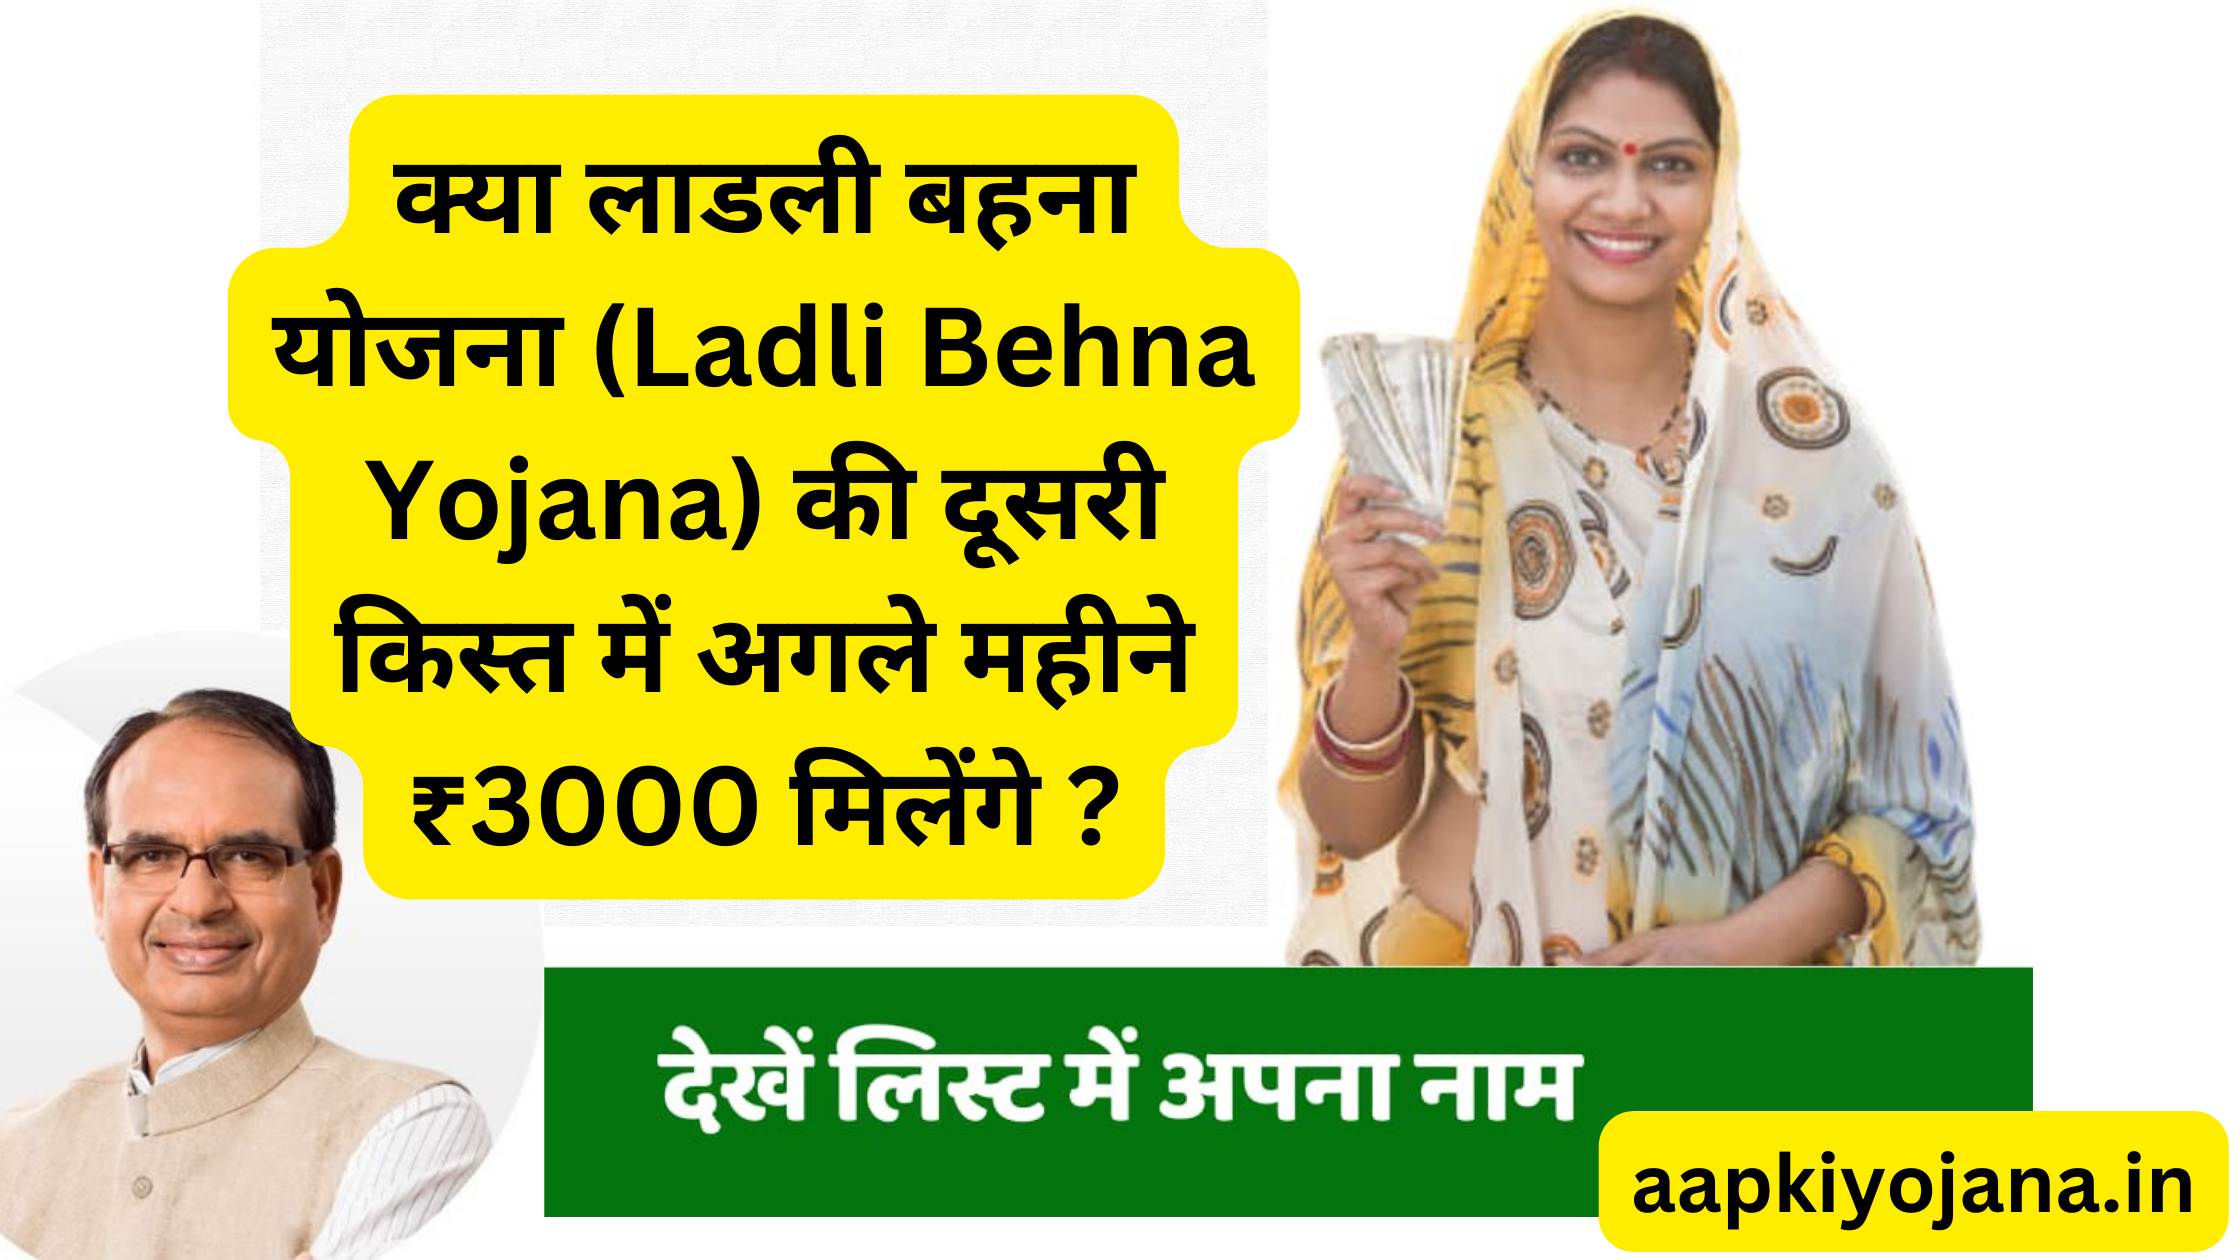 क्या लाडली बहना योजना (Ladli Behna Yojana) की दूसरी किस्त में अगले महीने ₹3000 मिलेंगे ?